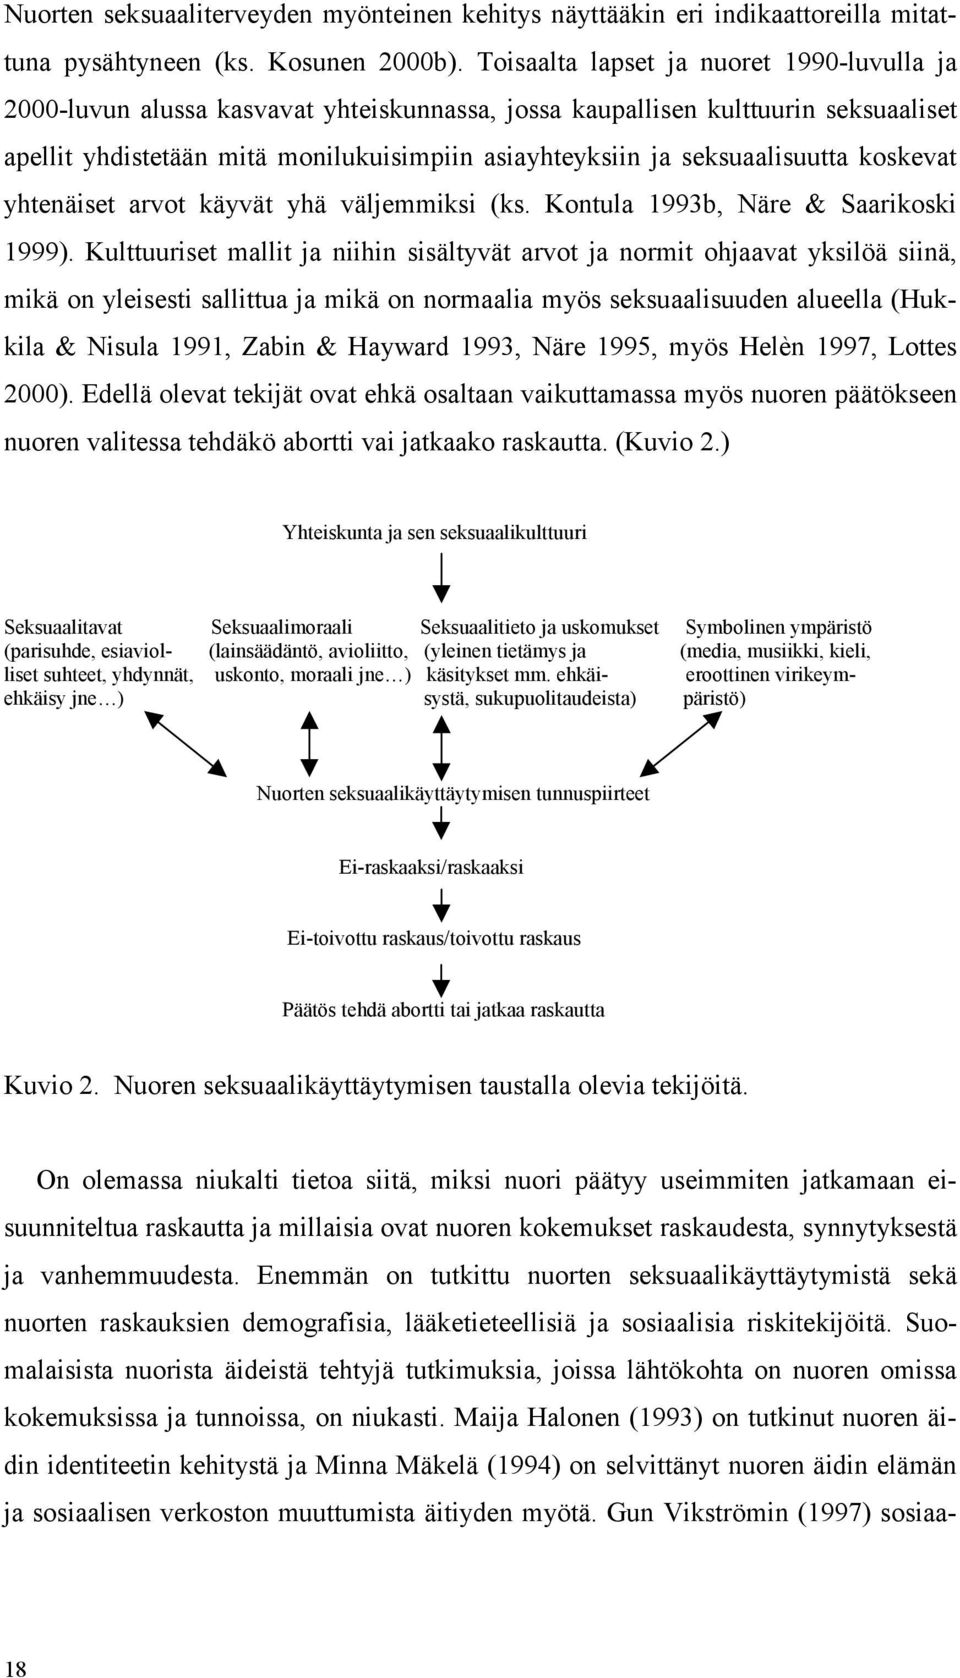 seksuaalisuutta koskevat yhtenäiset arvot käyvät yhä väljemmiksi (ks. Kontula 1993b, Näre & Saarikoski 1999).